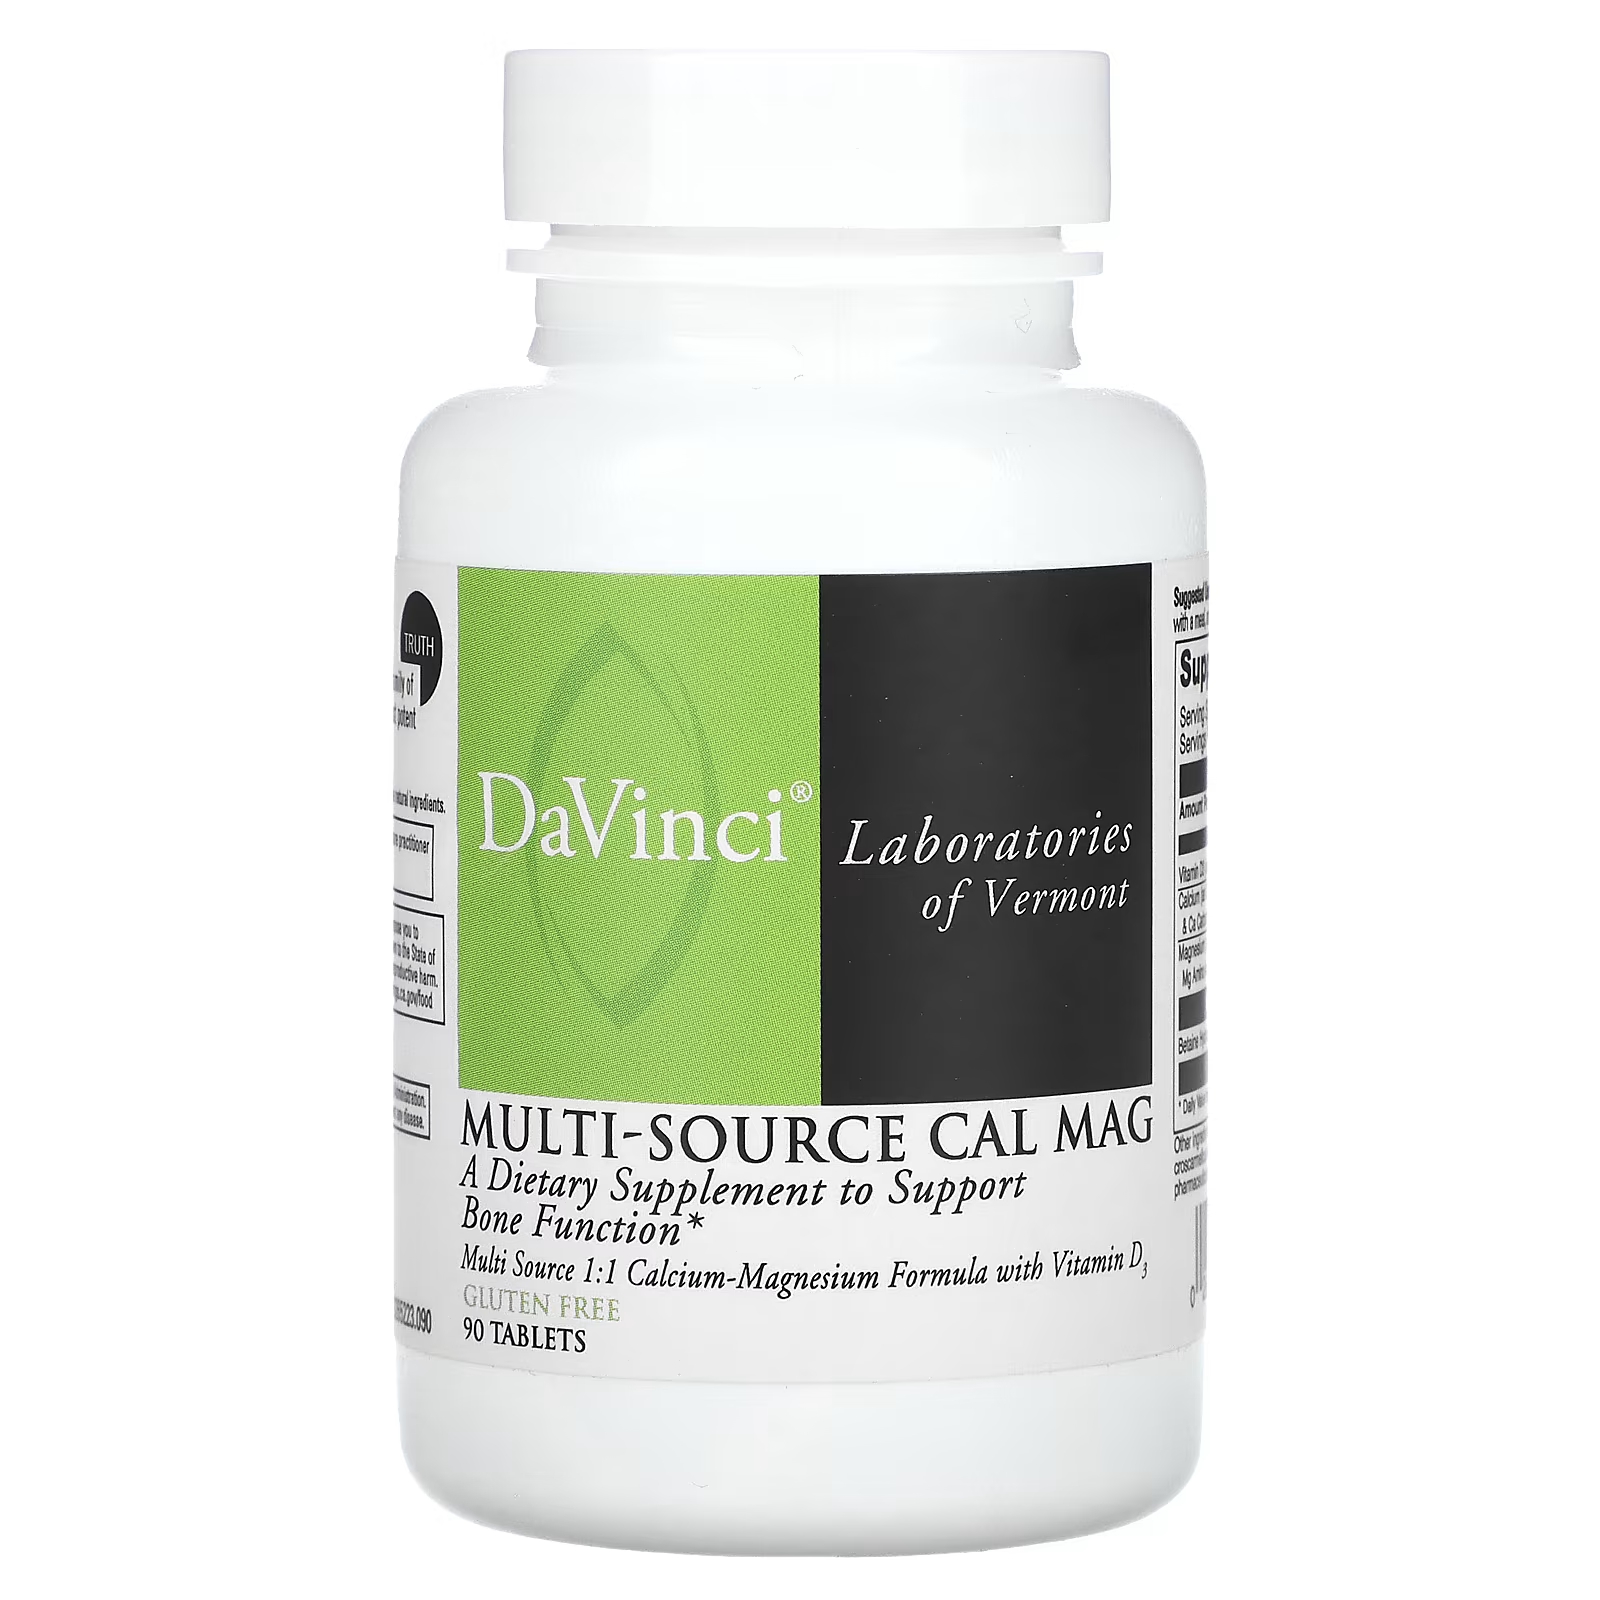 Пищевая добавка DaVinci Laboratories of Vermont Multi-Source Cal Mag, 90 таблеток citracal добавка с кальцием и витамином d3 маленькие таблетки 100 капсул с покрытием